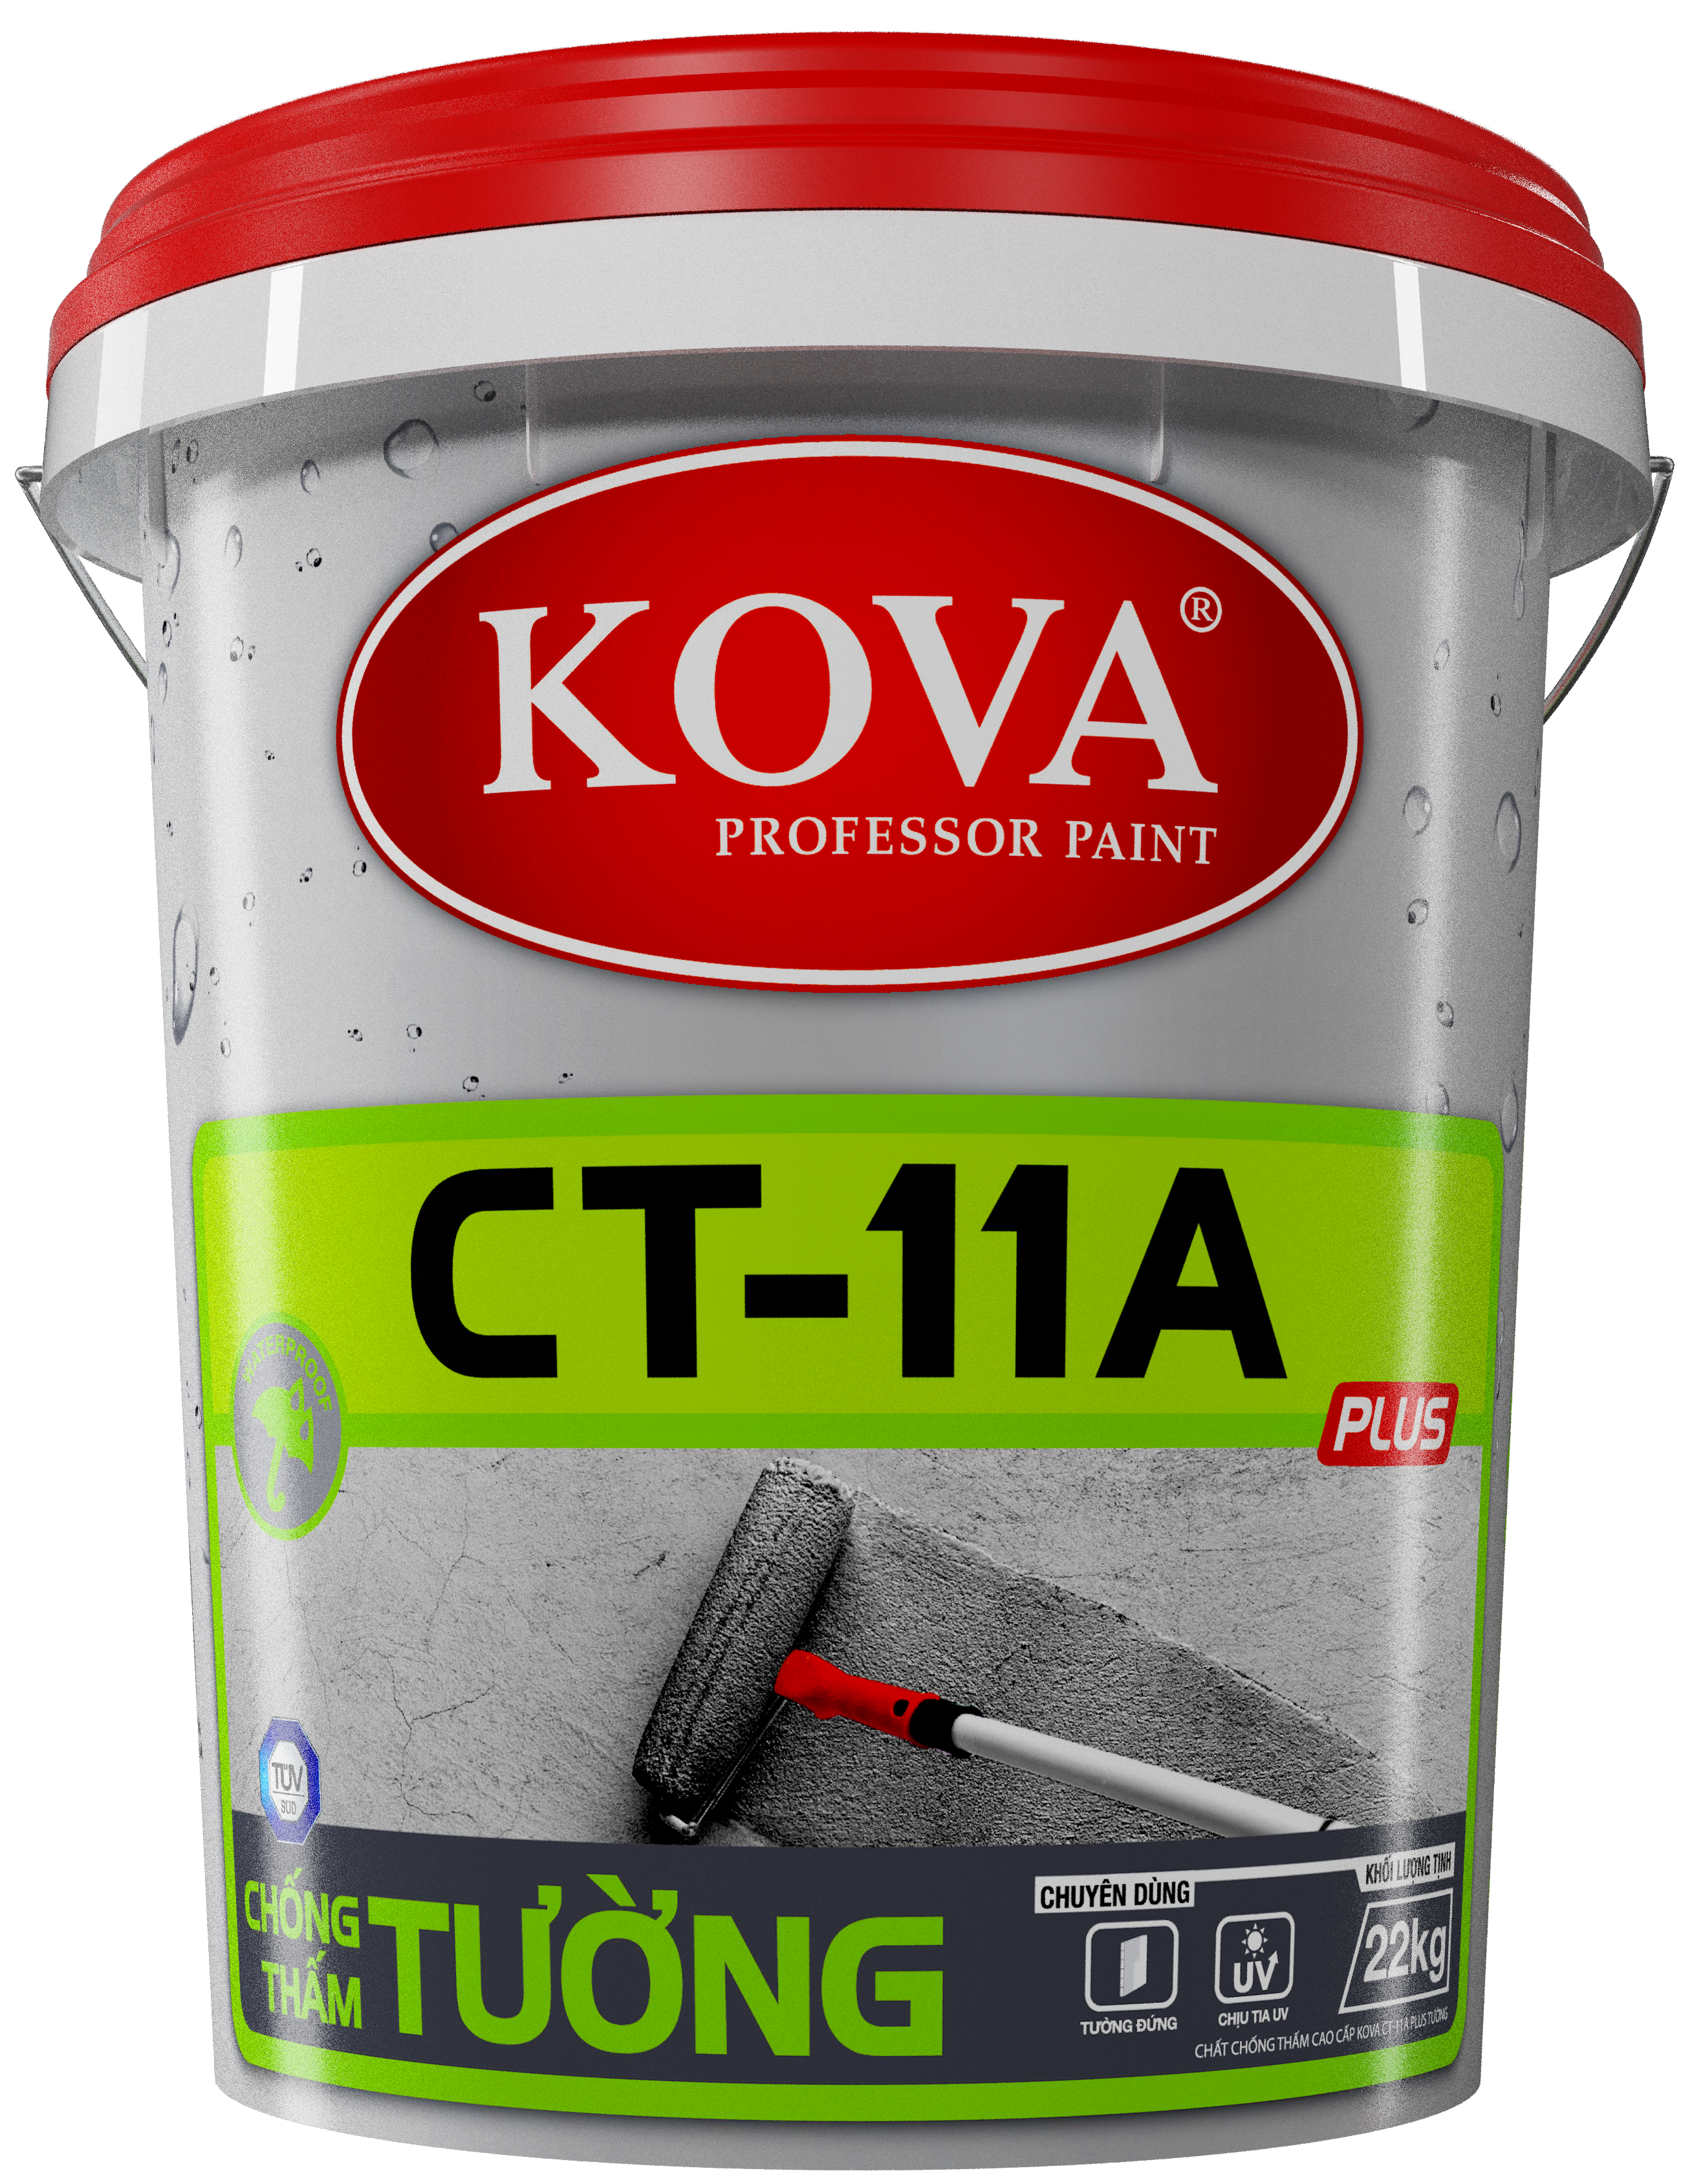 Tập đoàn sơn KOVA là một trong những đơn vị hàng đầu về sản xuất sơn chất lượng. Với đội ngũ nhân viên giàu kinh nghiệm và trang thiết bị hiện đại, KOVA sẽ đảm bảo đáp ứng mọi nhu cầu của bạn về sơn. Hãy xem hình ảnh về tập đoàn sơn KOVA để có thể tin tưởng và lựa chọn sản phẩm.